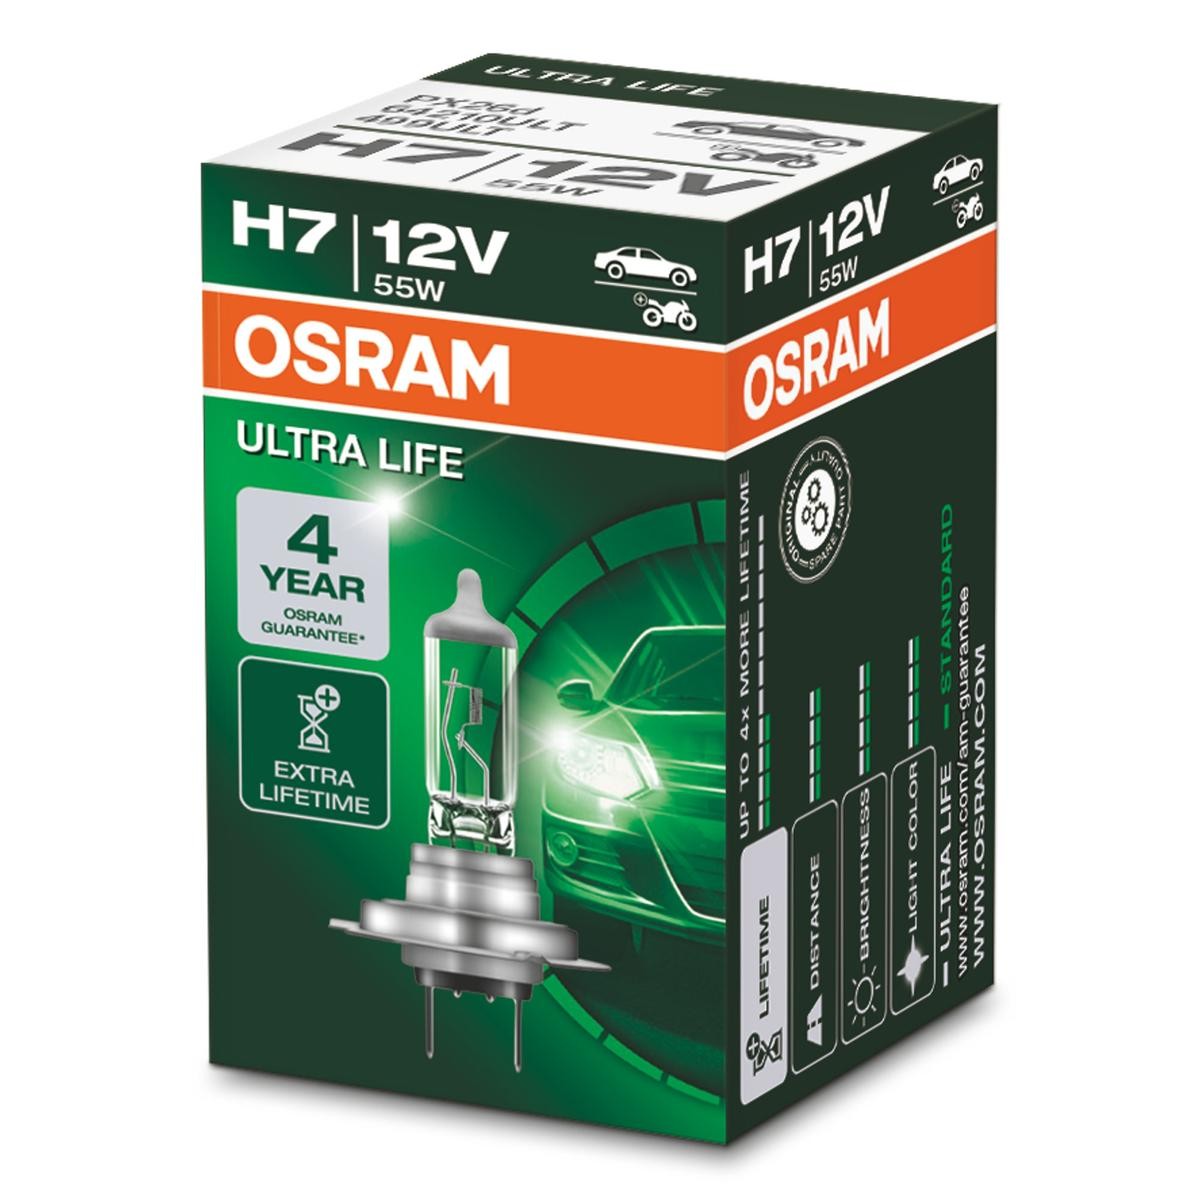 Comprare H7 OSRAM ULTRA LIFE H7 12V 55W PX26d 3200K Alogeno Lampadina, Faro di profondità 64210ULT poco costoso